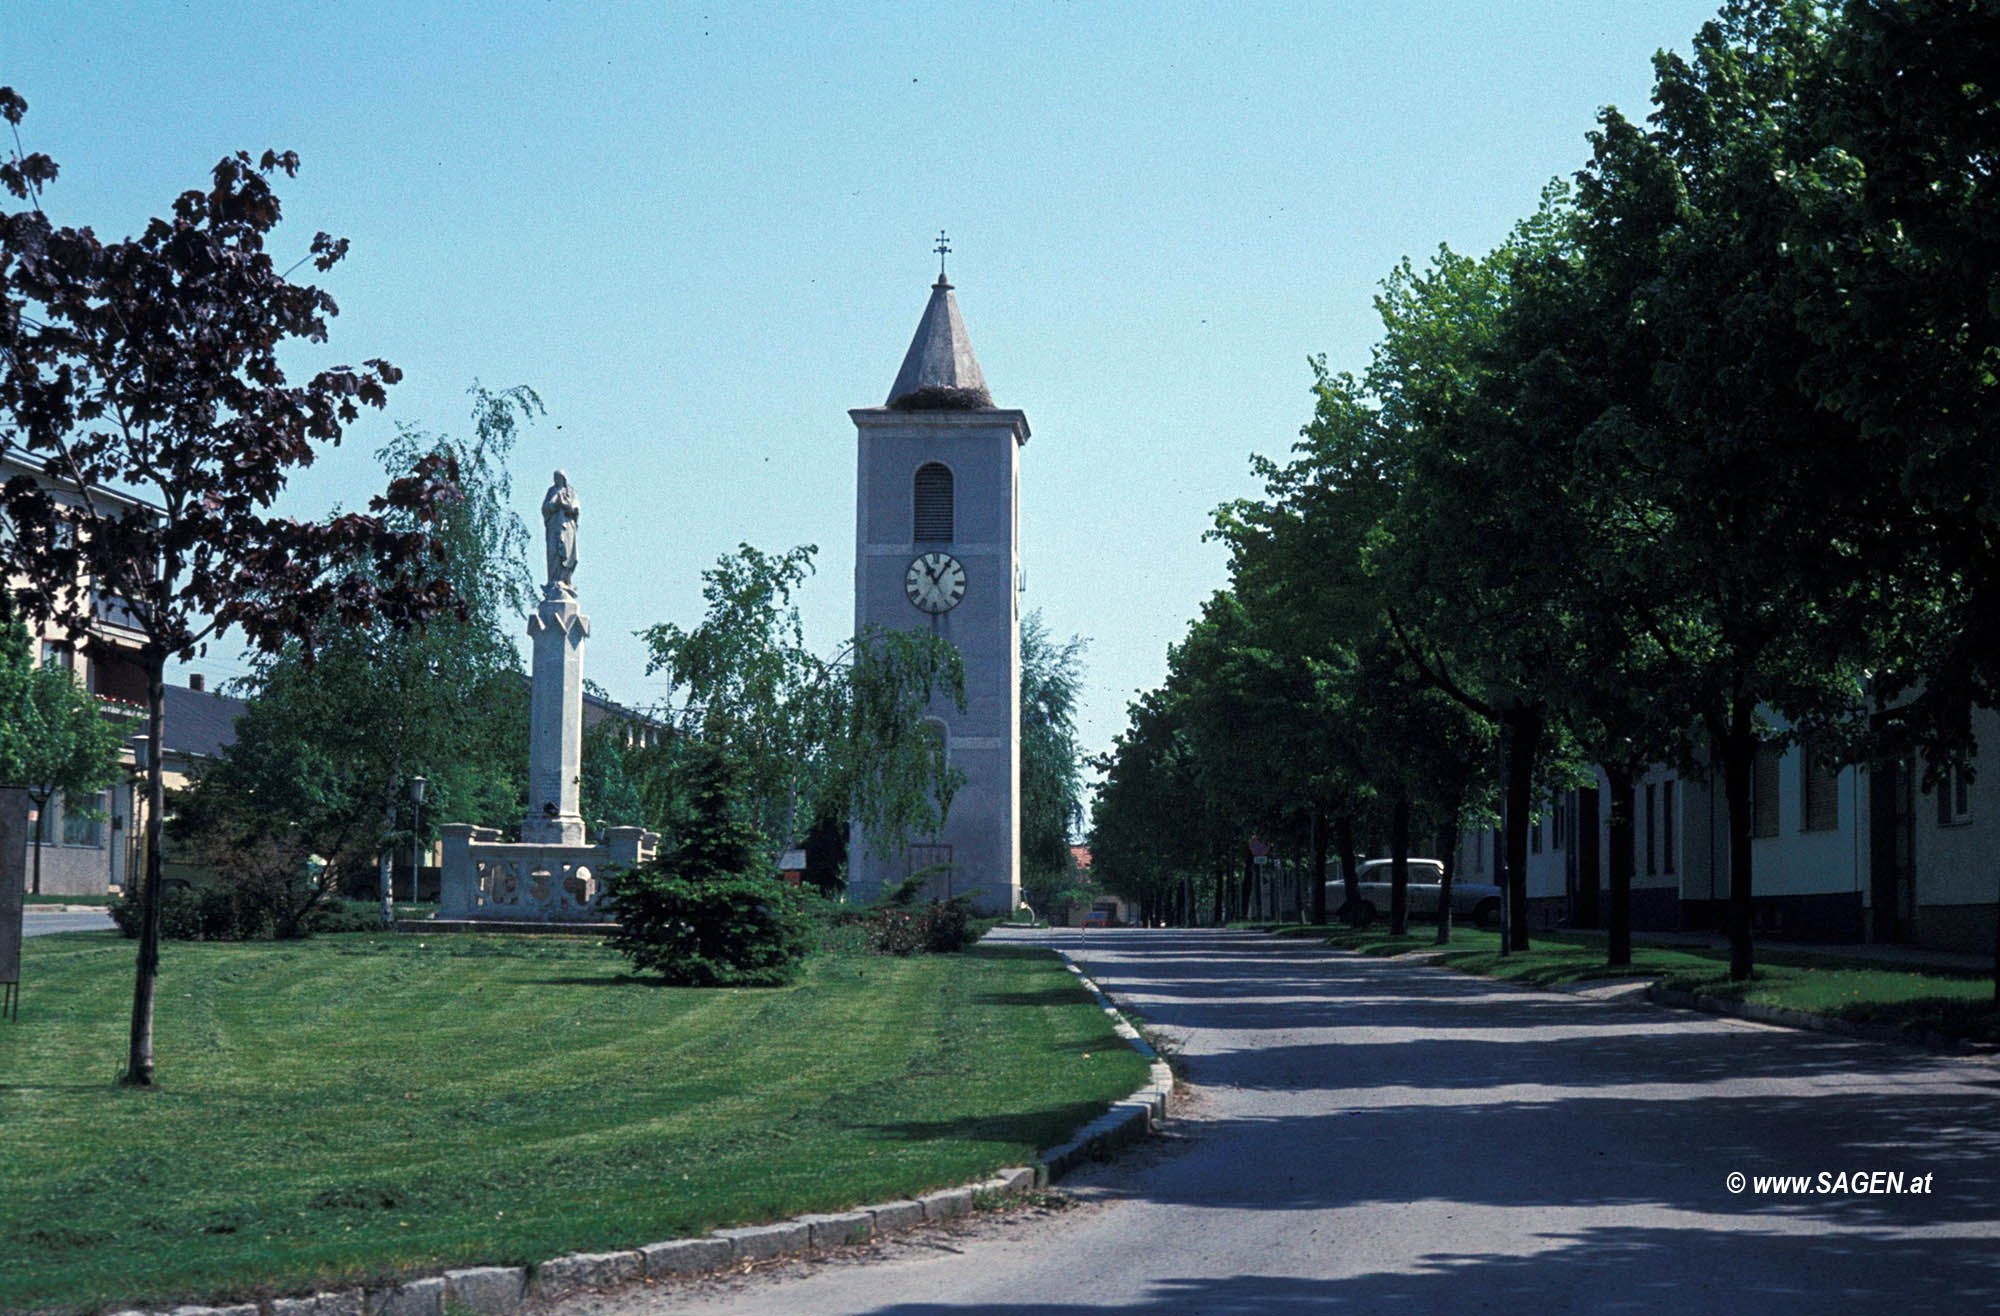 Glockenturm in Wallern im Burgenland